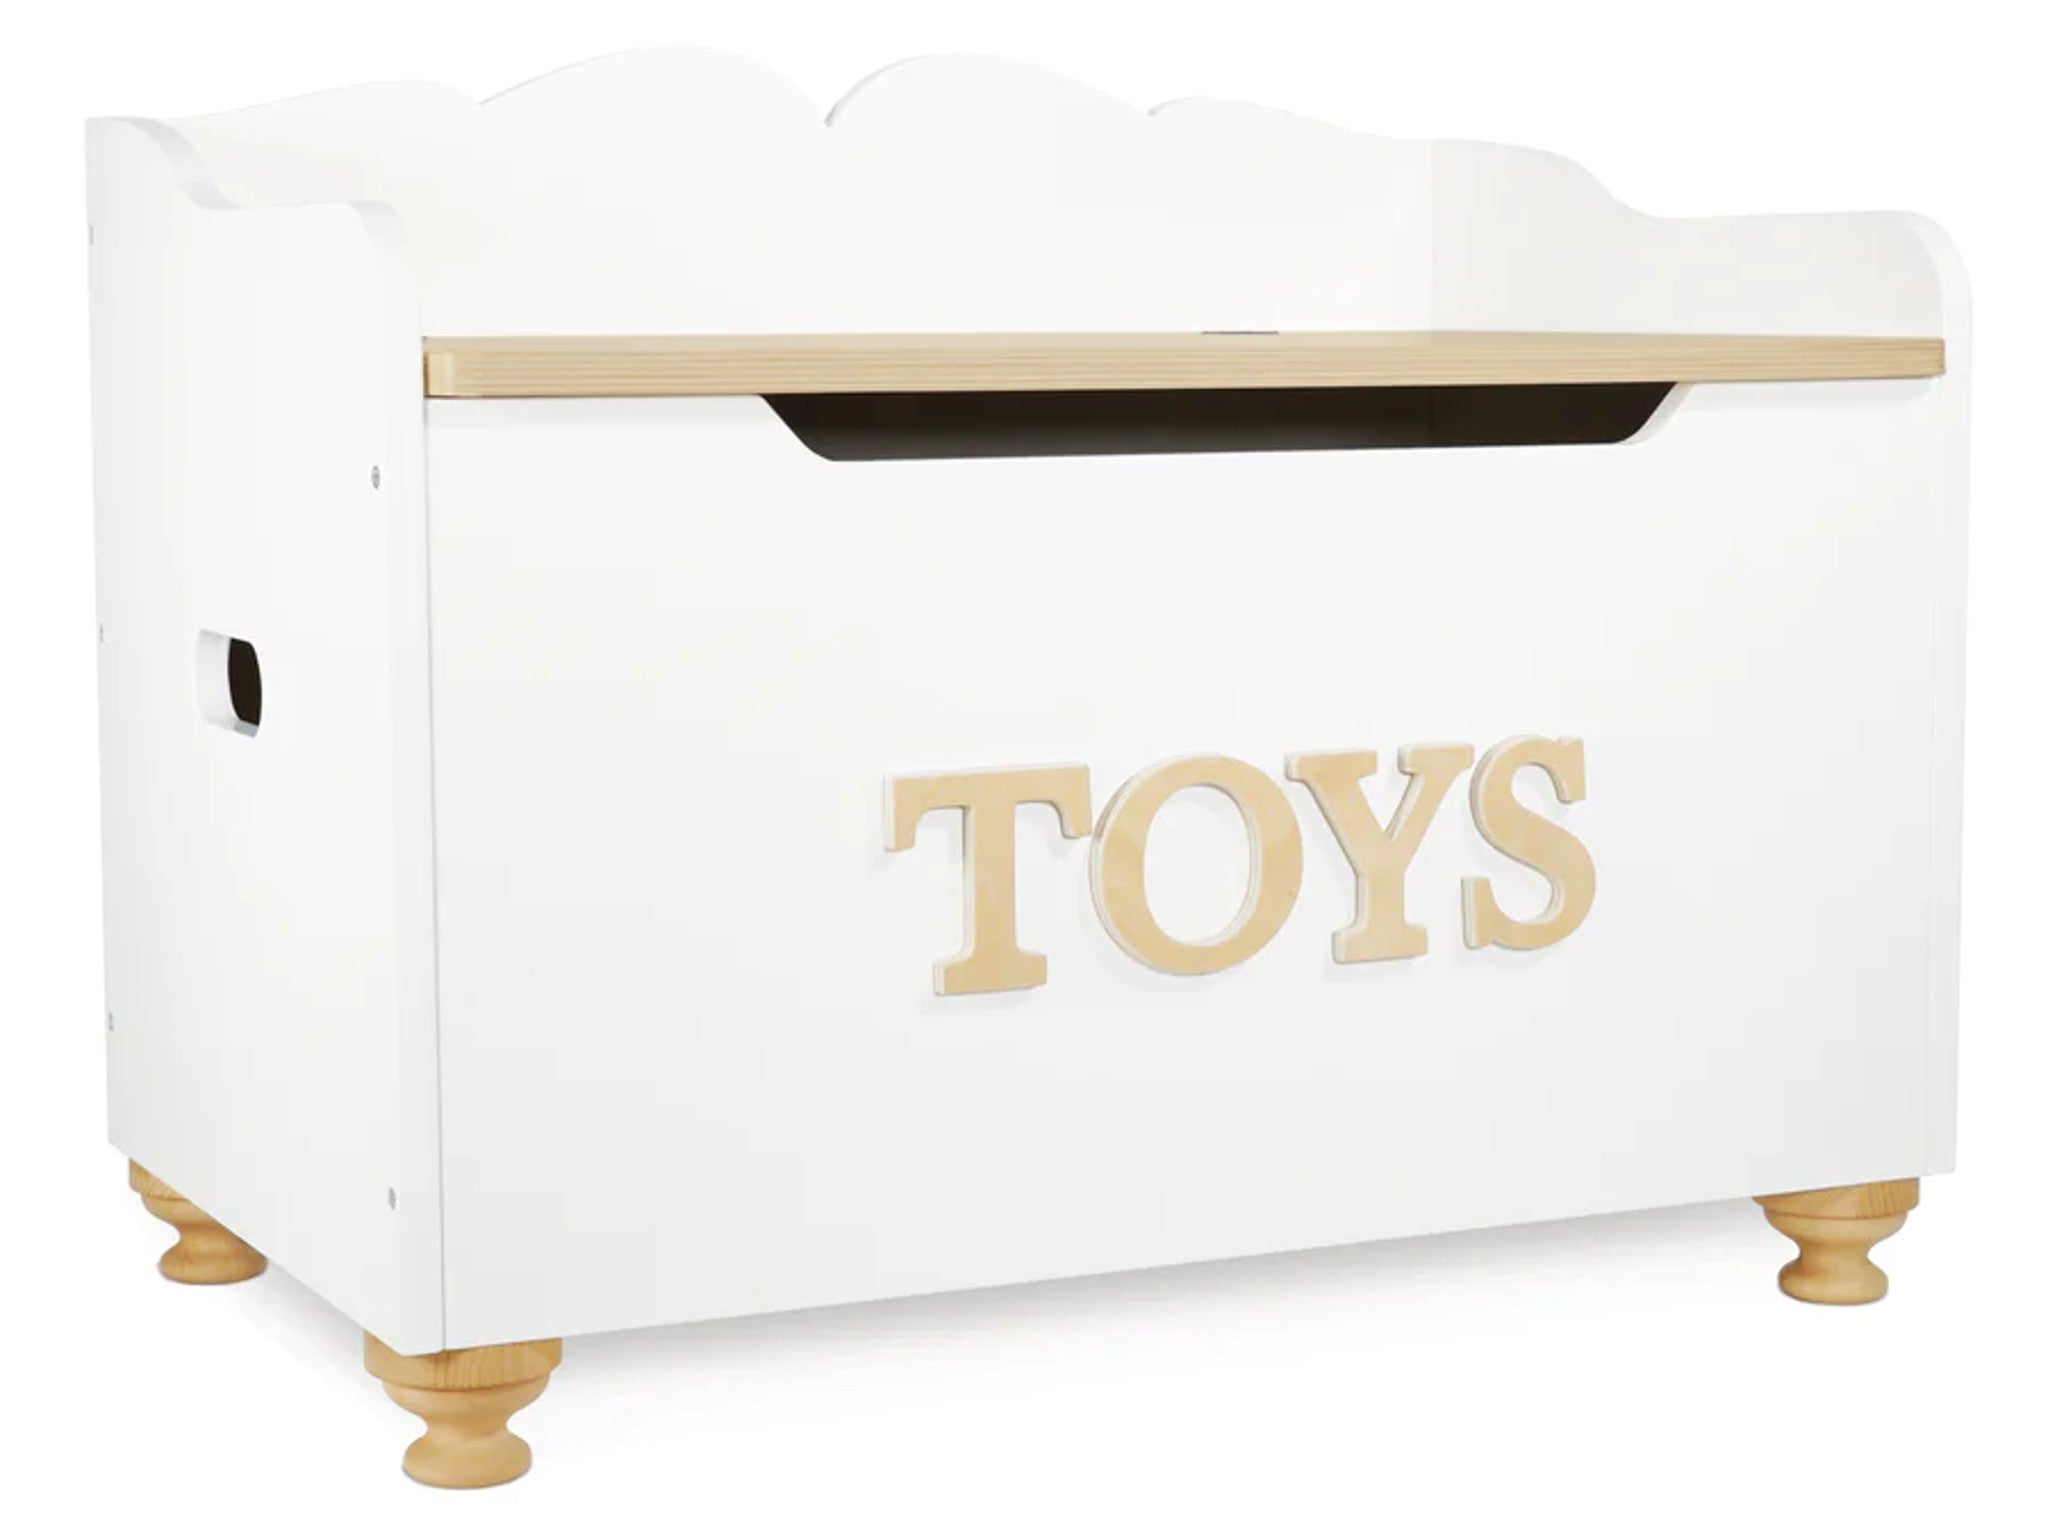 Le Toy Van toy box